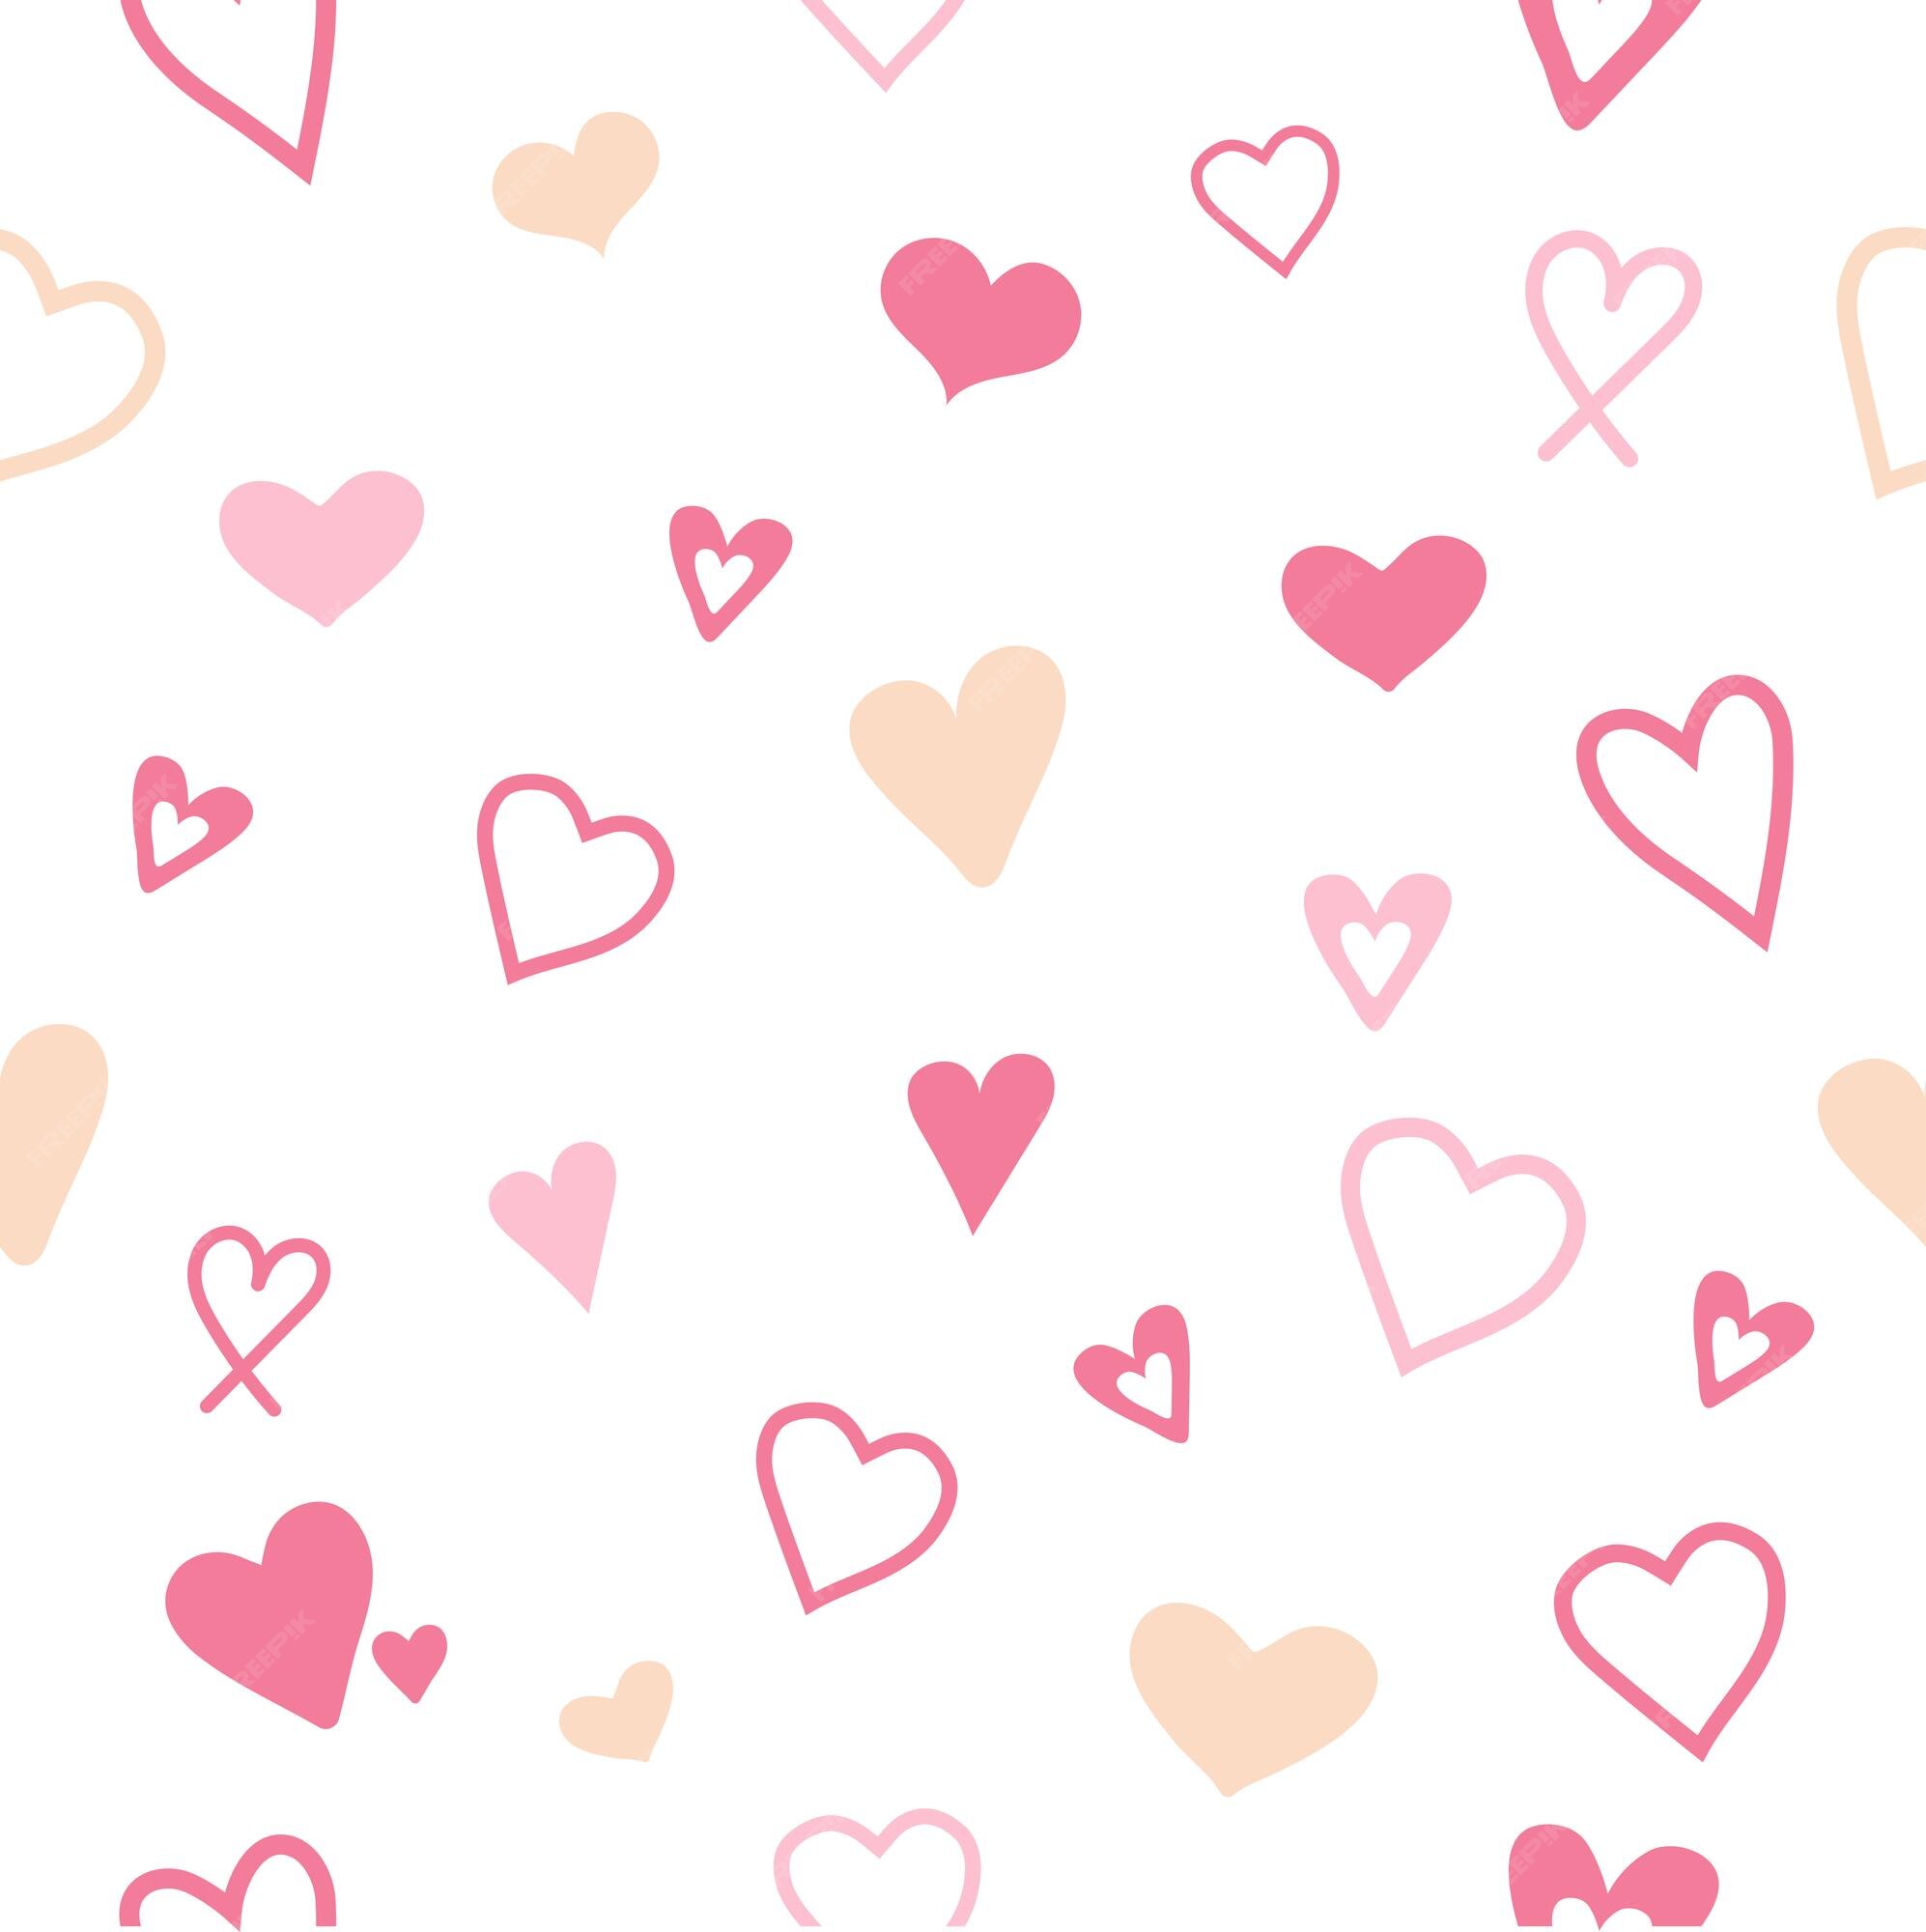 Mẫu hoa văn lặp lại với các hình vẽ trái tim sẽ khiến bạn cảm thấy thật tình cảm và ngọt ngào. Hãy xem ngay hình ảnh này để cảm nhận được sự ấm áp và tình yêu!